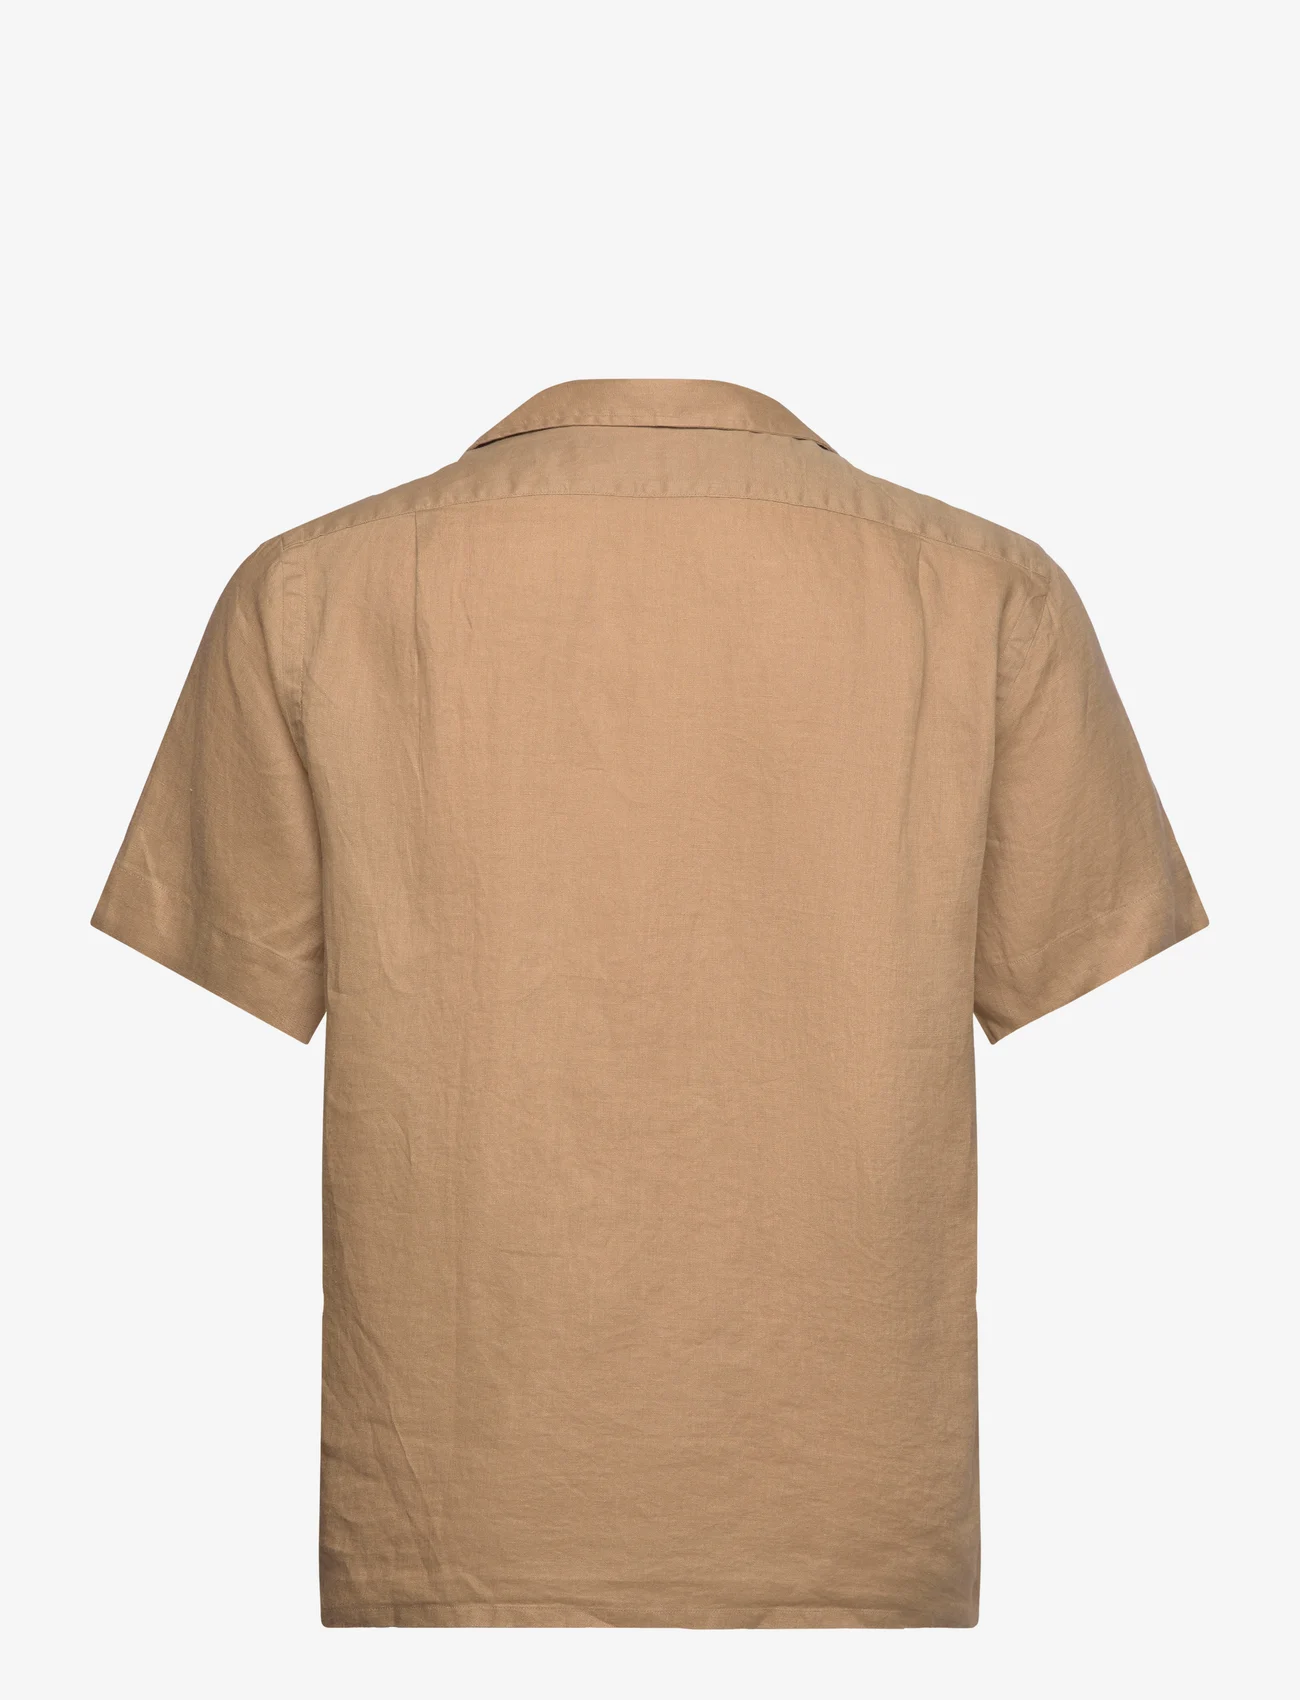 Polo Ralph Lauren - Classic Fit Linen Camp Shirt - kurzarmhemden - vintage khaki - 1